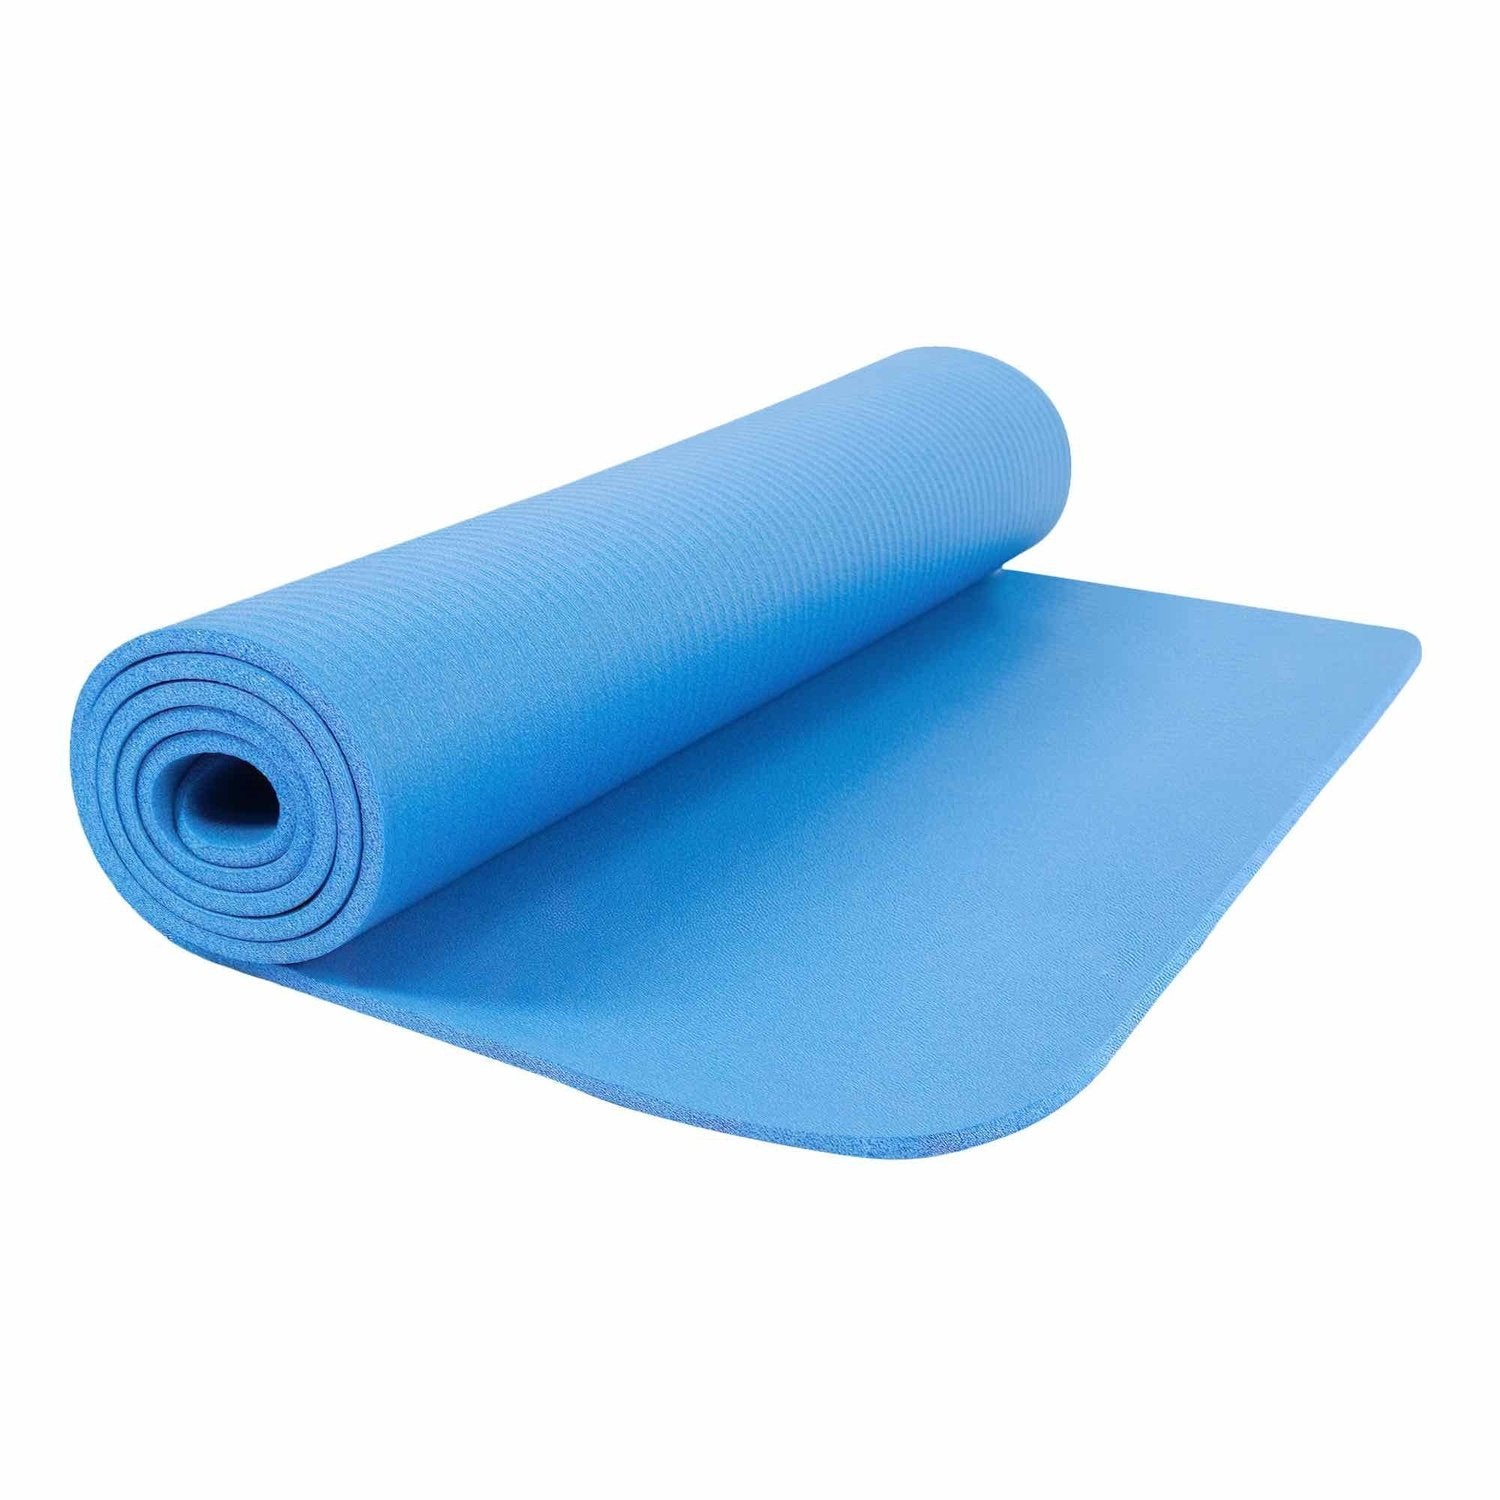 HighPowered Yogamatte (NBR, 183x61x0.8 cm) Blau kaufen bei HighPowered.ch